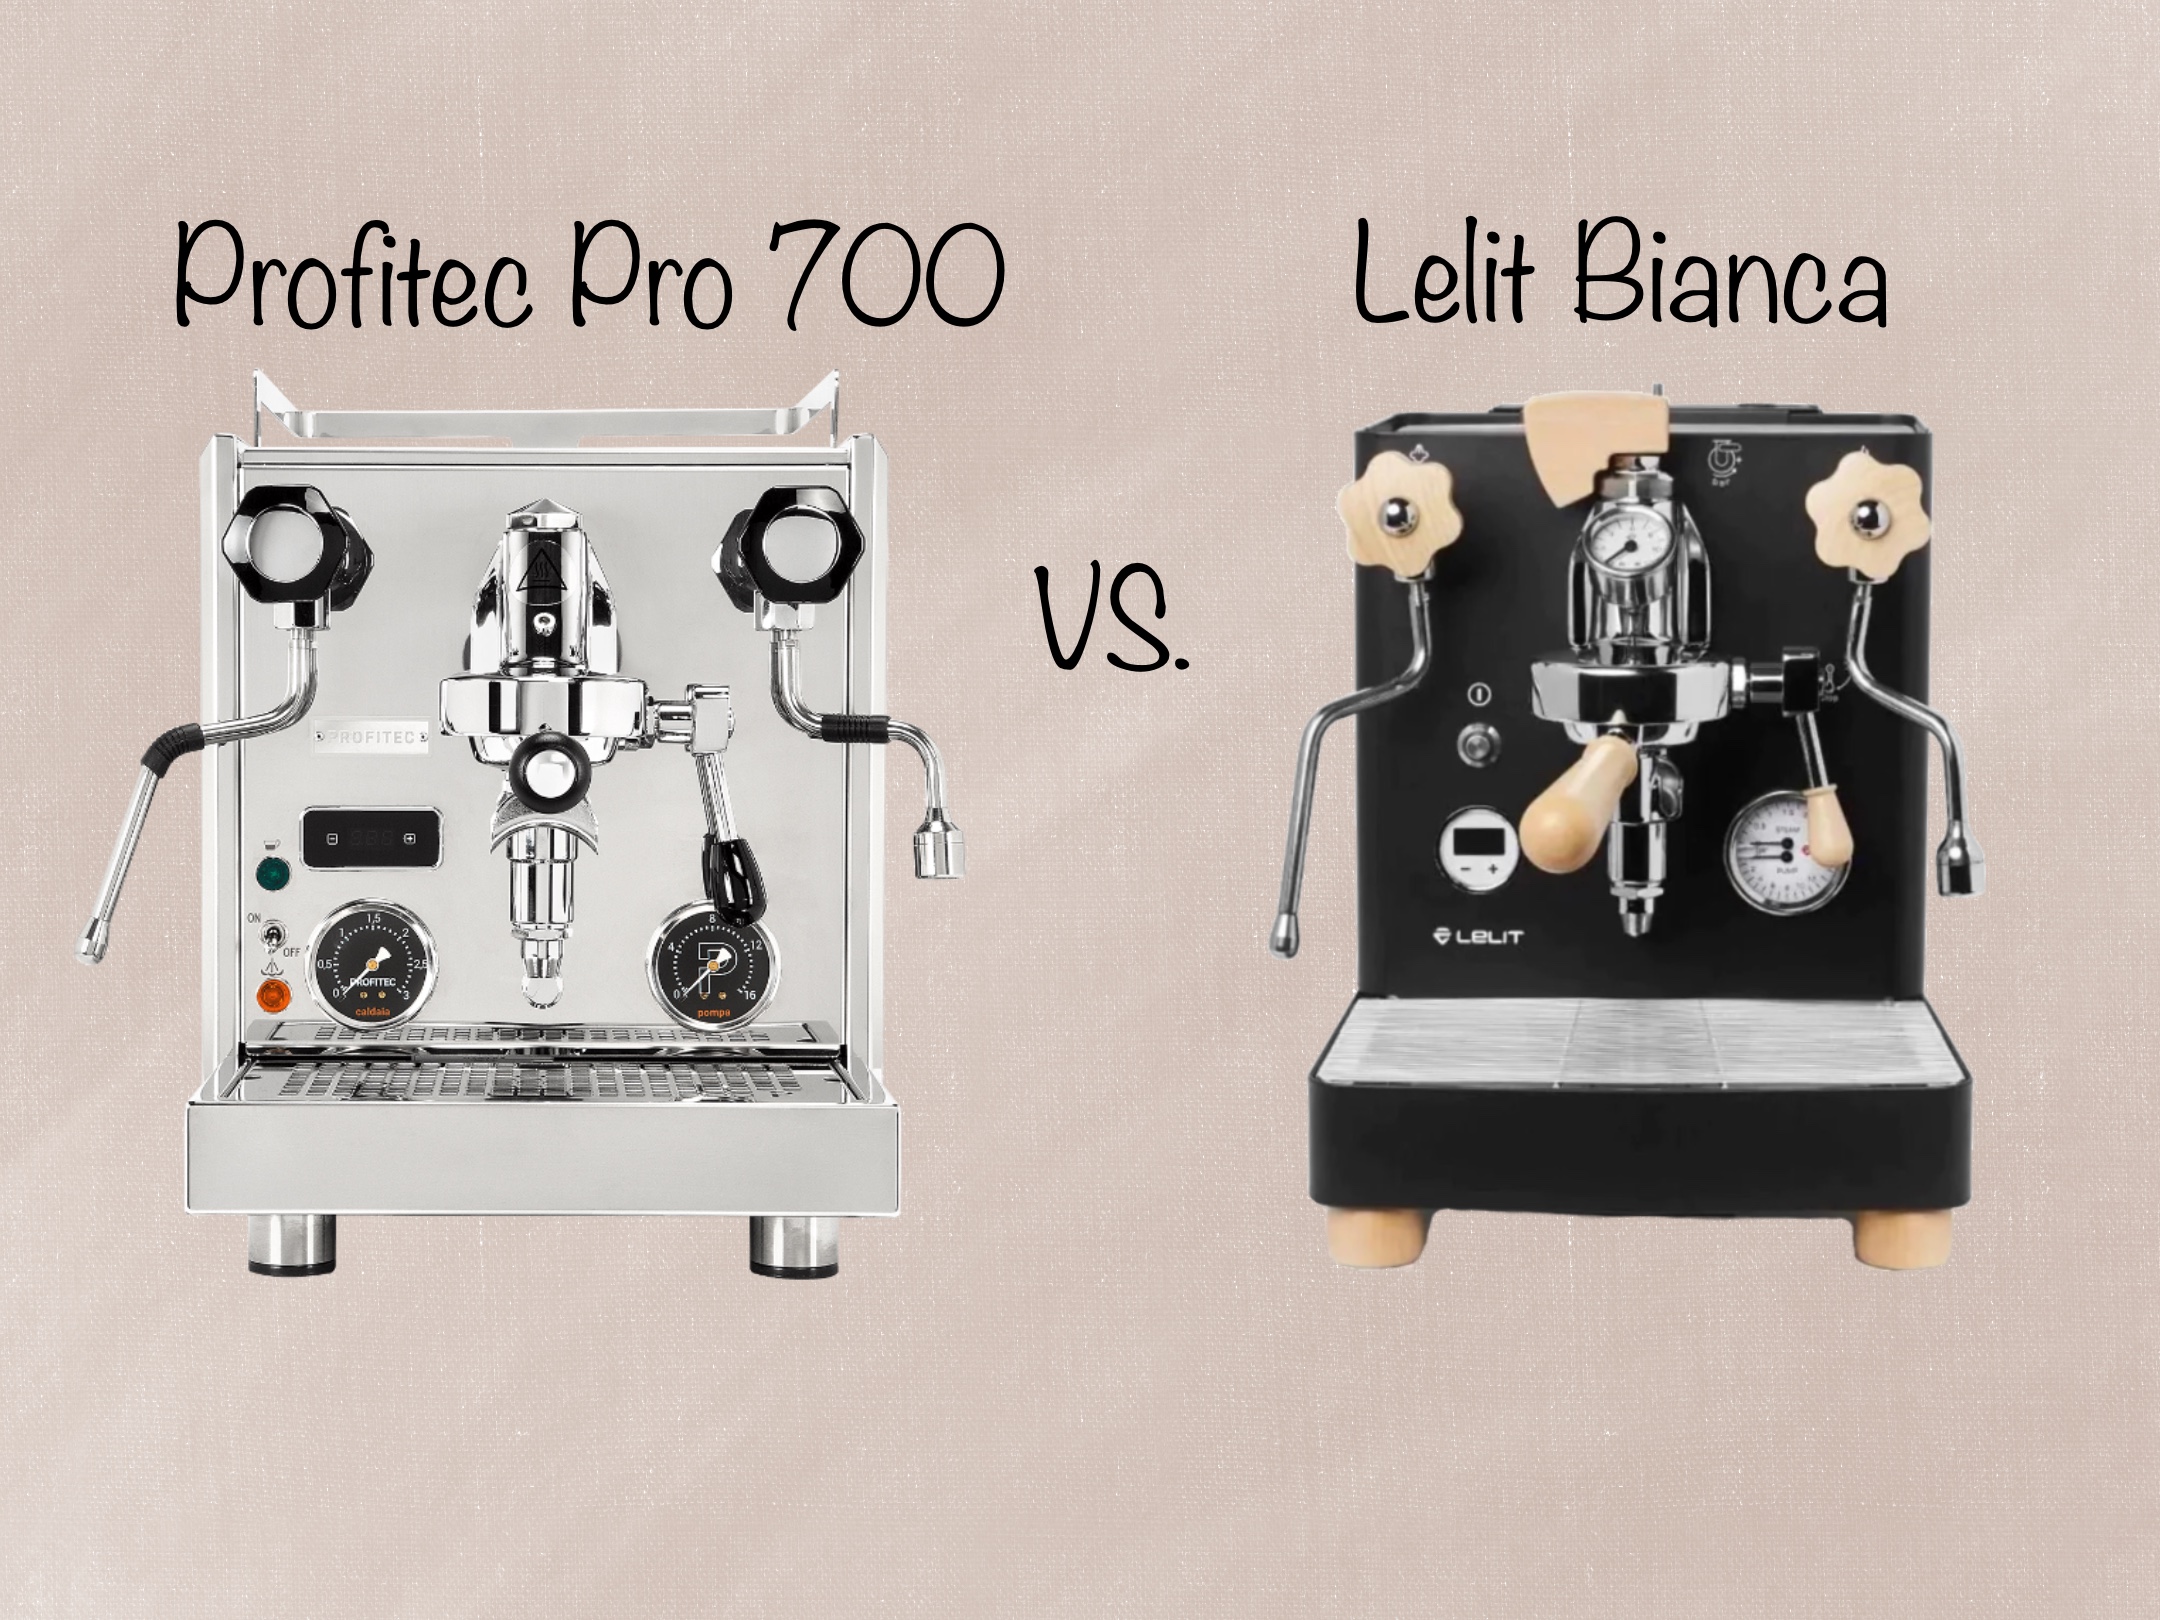 Lelit Bianca V3 vs Profitec Pro 700